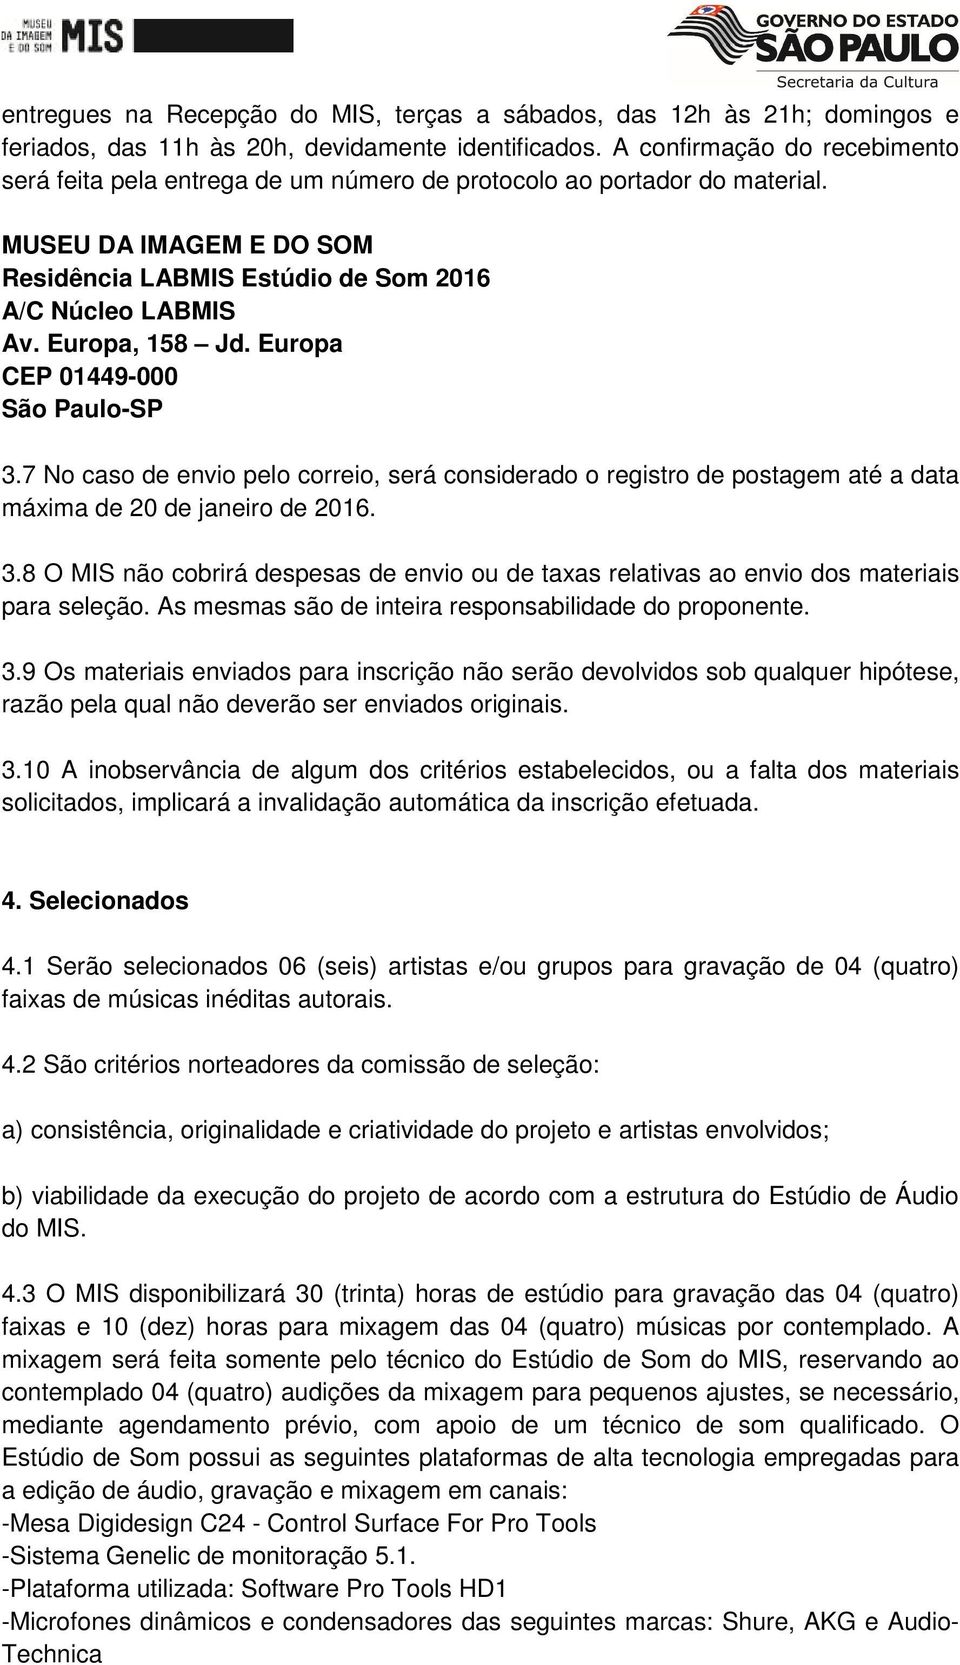 Europa, 158 Jd. Europa CEP 01449-000 São Paulo-SP 3.7 No caso de envio pelo correio, será considerado o registro de postagem até a data máxima de 20 de janeiro de 2016. 3.8 O MIS não cobrirá despesas de envio ou de taxas relativas ao envio dos materiais para seleção.